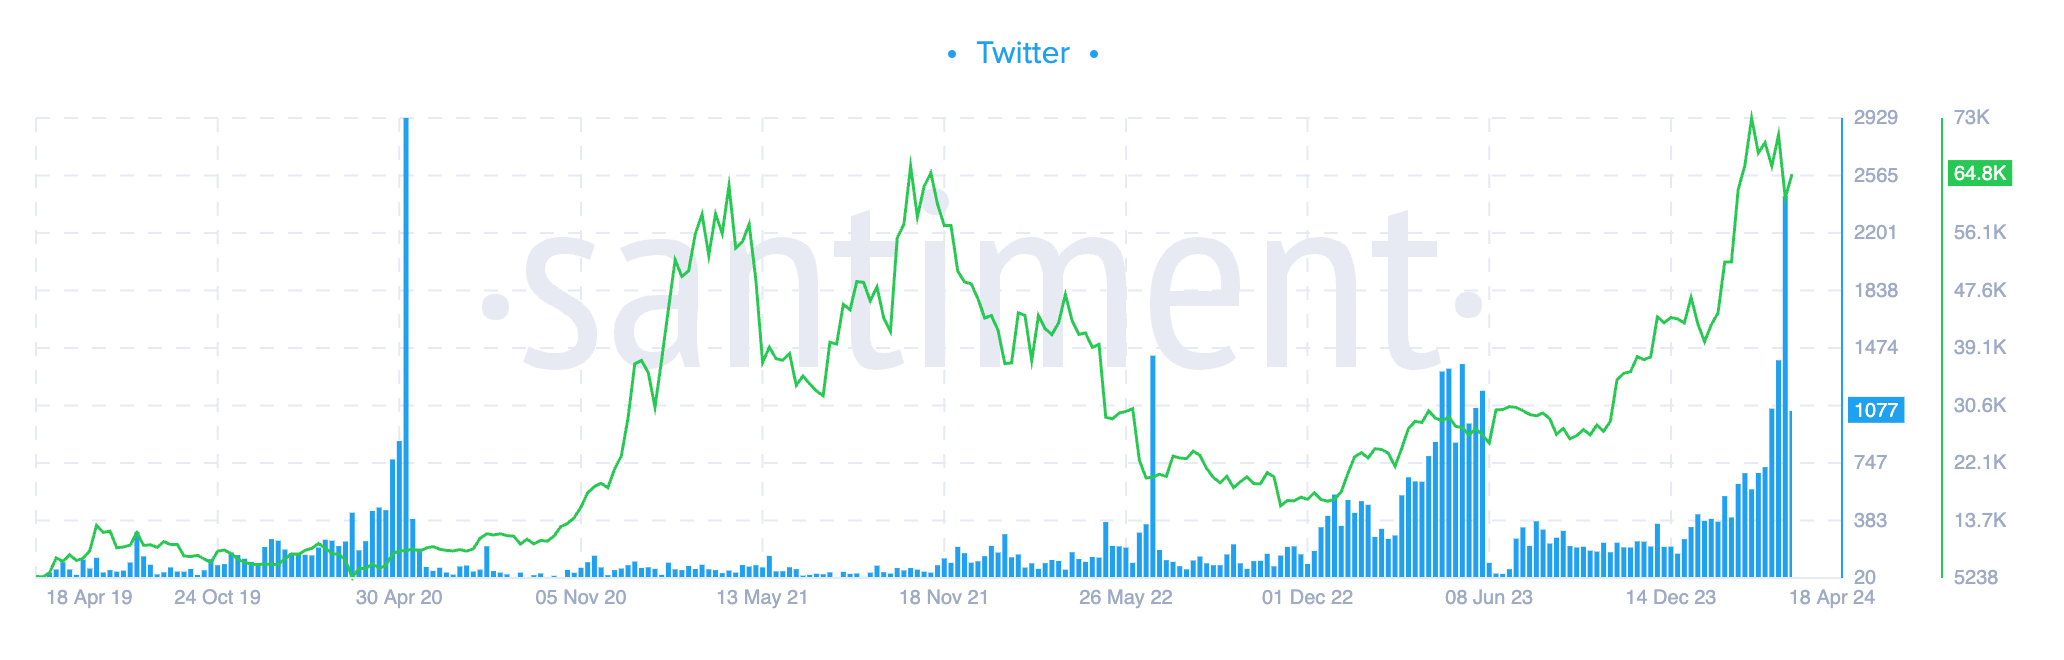 Bitcoin réduit de moitié l'intérêt de Twitter (Santiment)